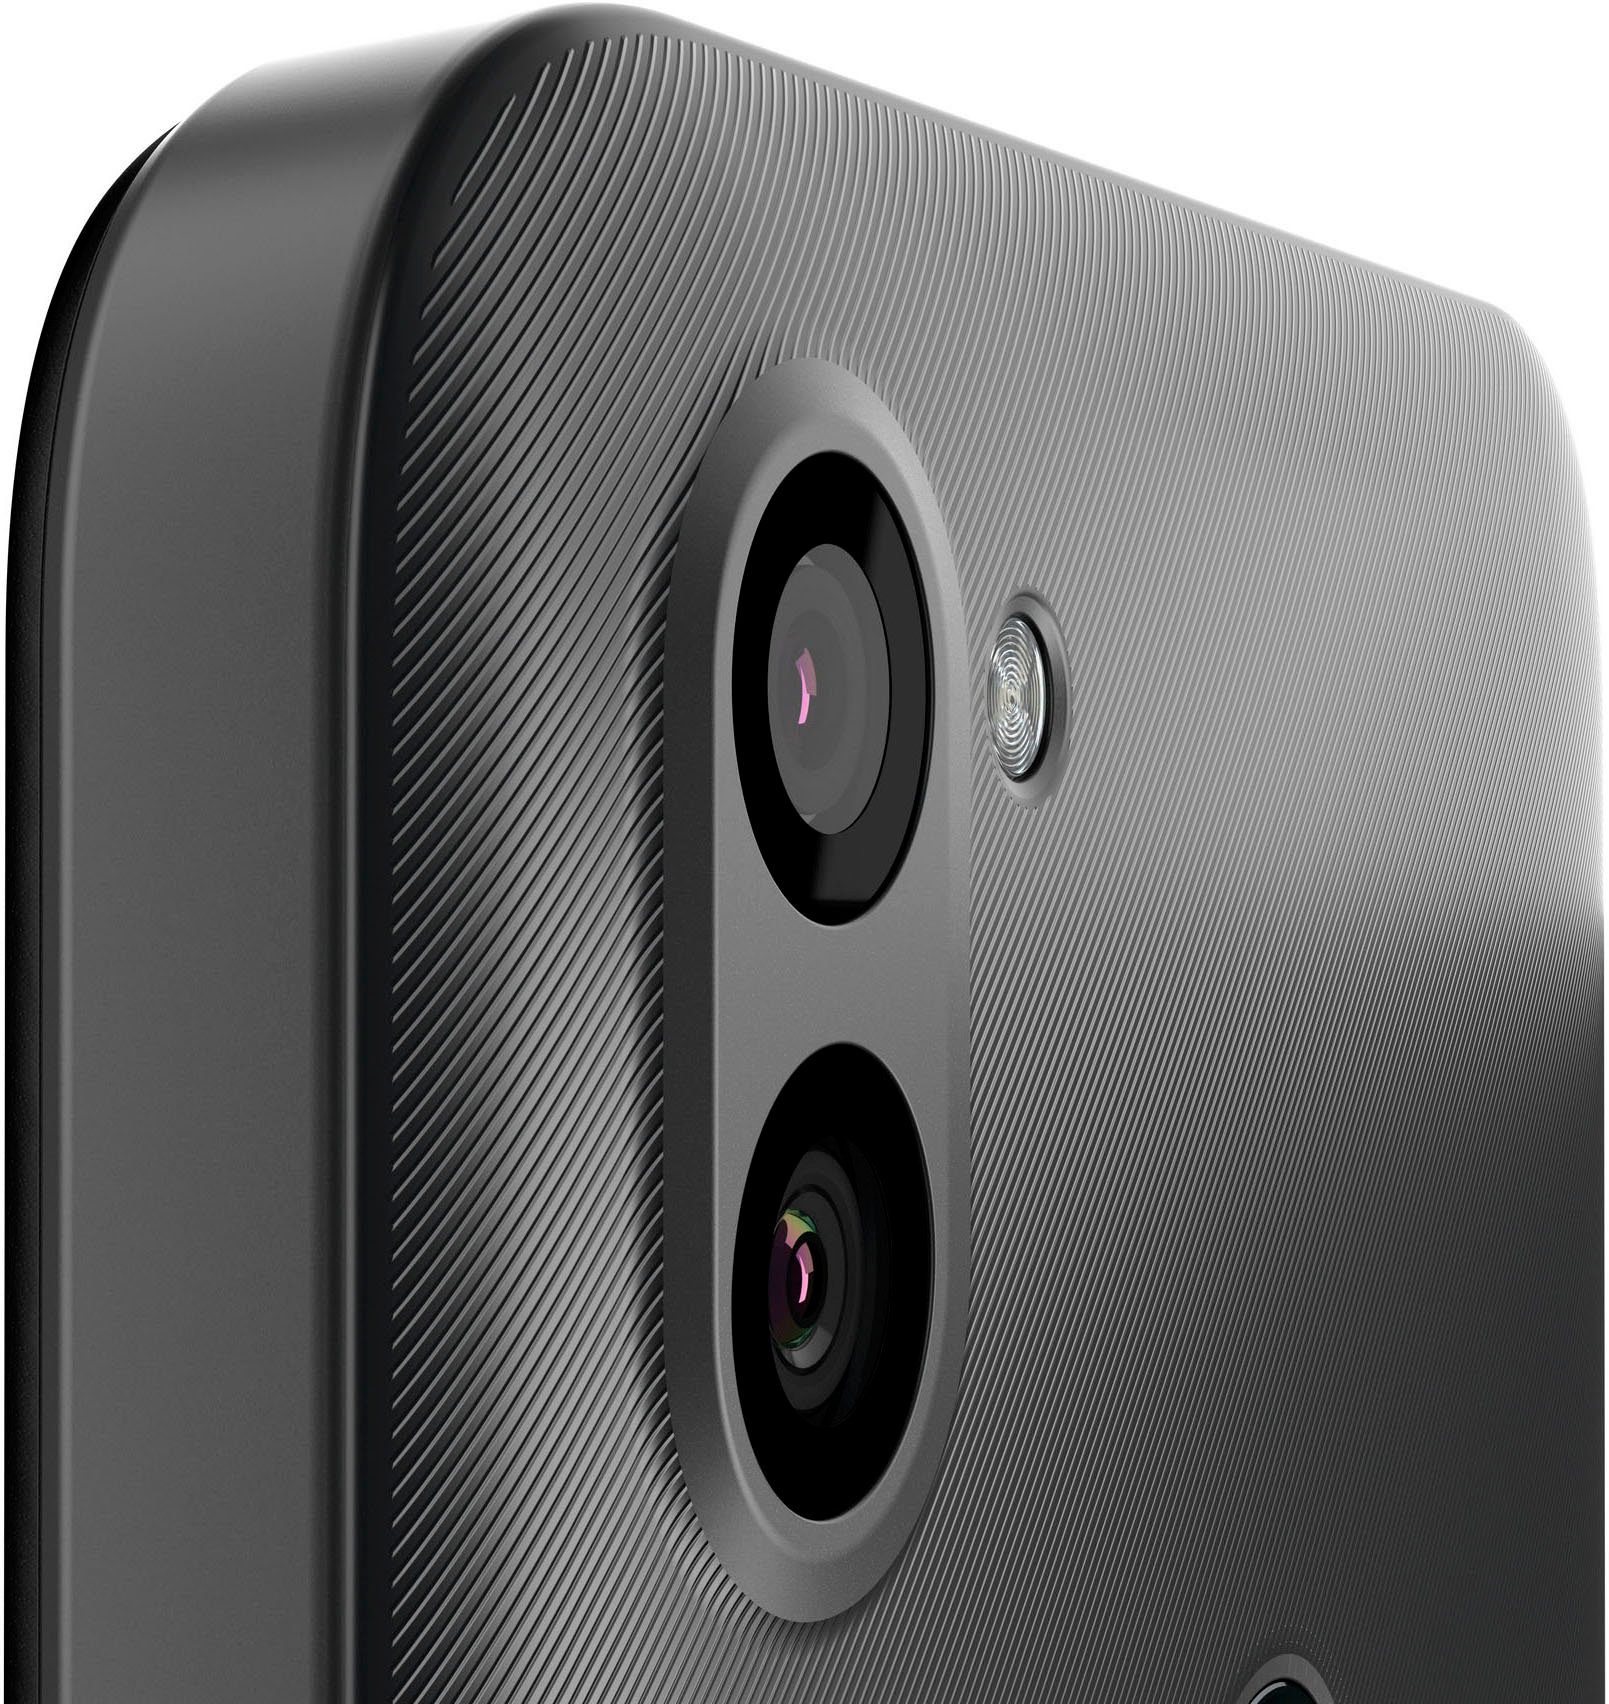 Gigaset GS5 LITE Smartphone Kamera) Speicherplatz, Titanium cm/6,3 Grey MP (16 48 Dark GB Zoll, 64